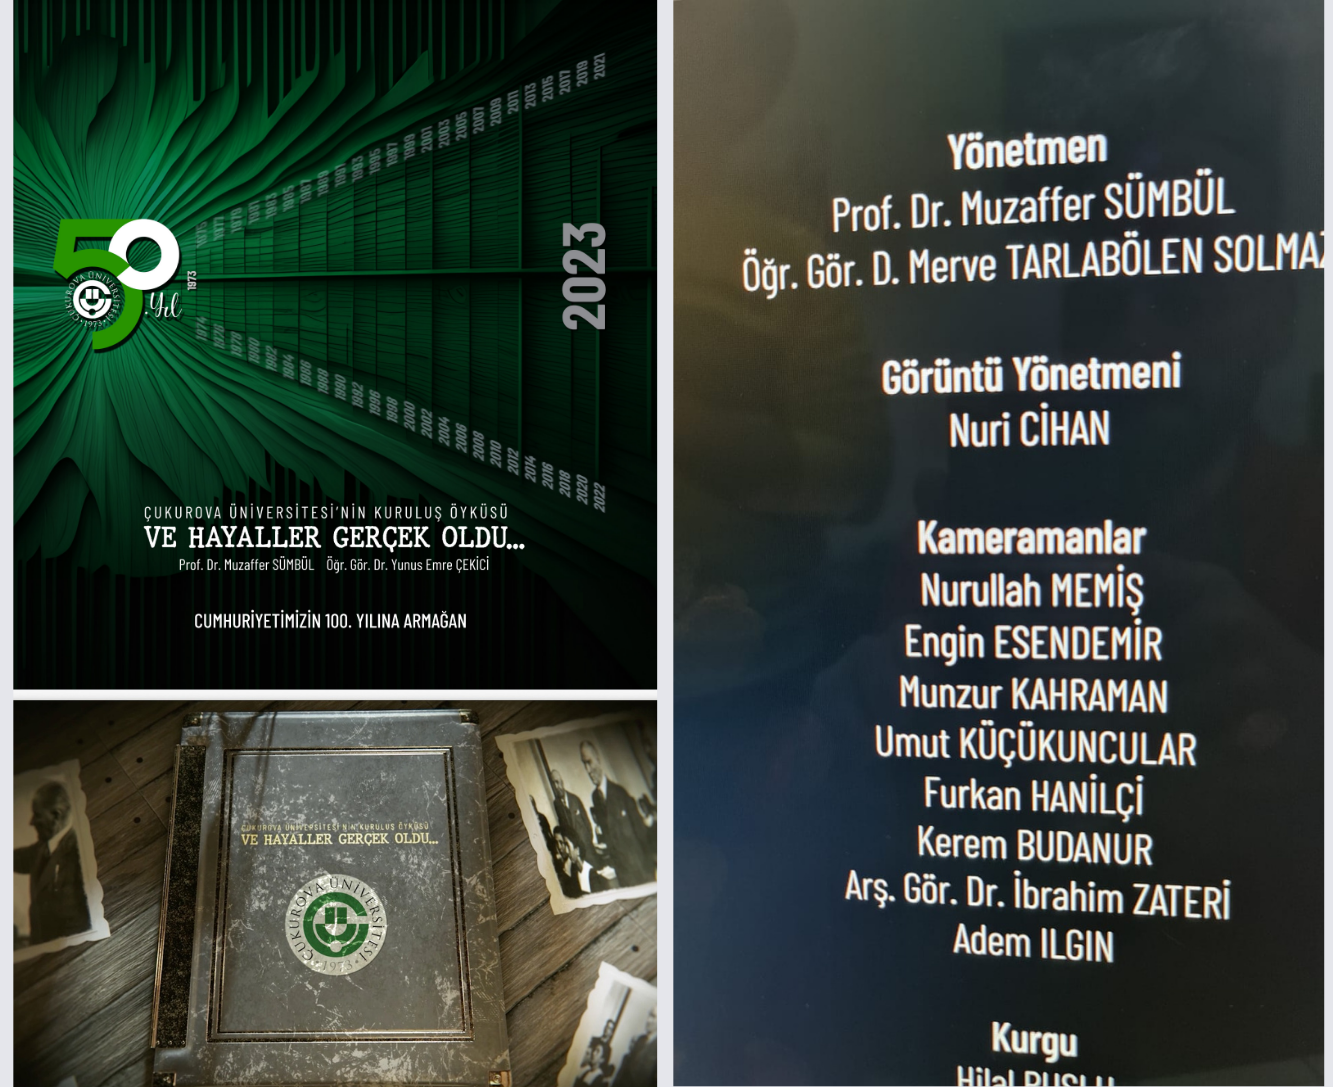 Çukurova Üniversitesi’nin kuruluş öyküsü, belgesel film, kitap ve sergi oldu